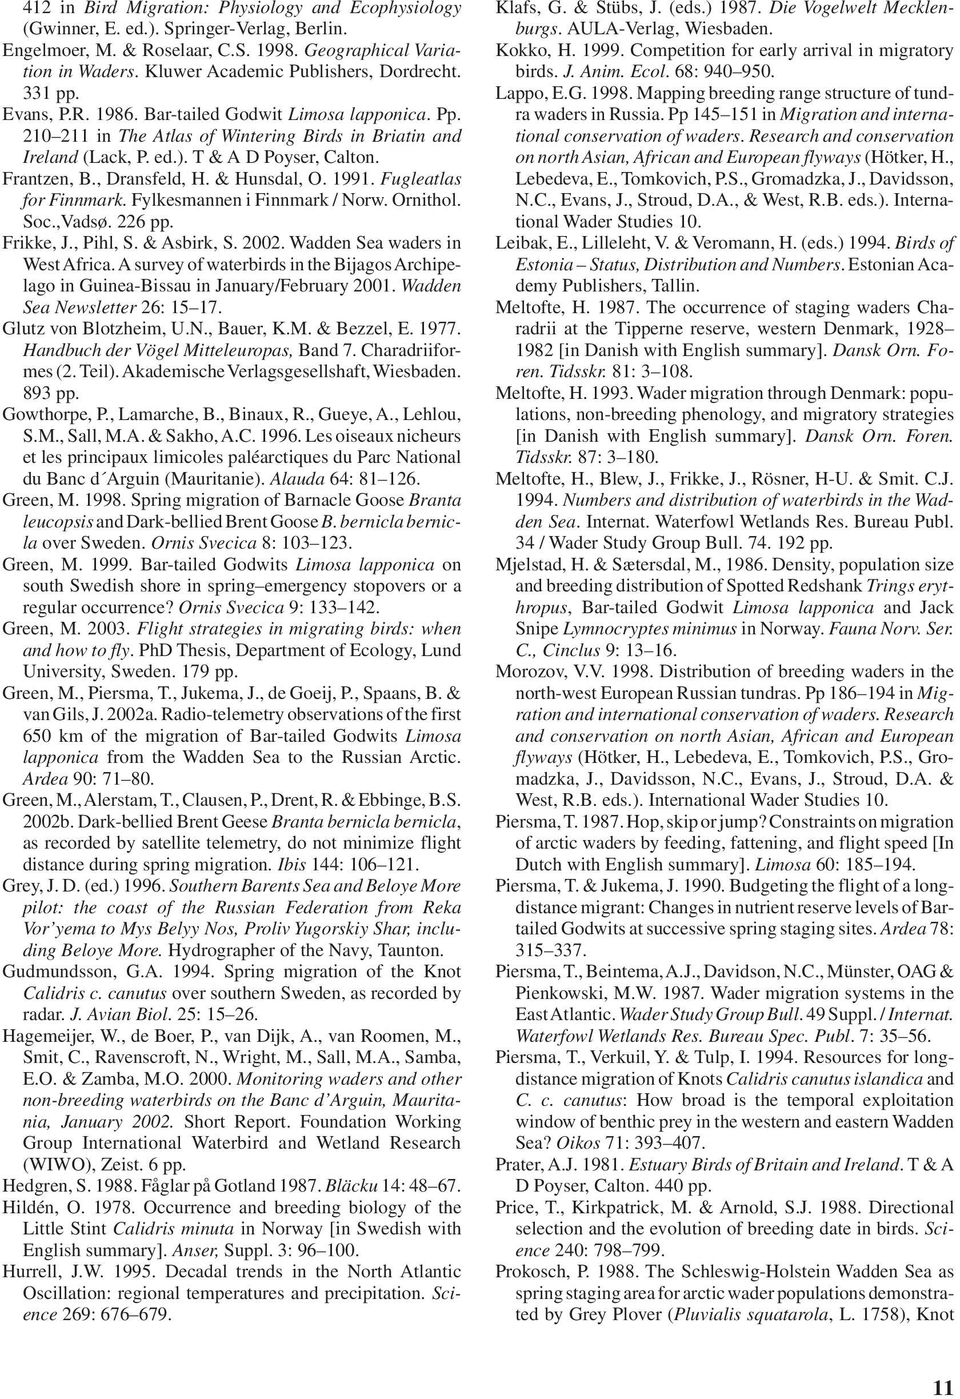 T & A D Poyser, Calton. Frantzen, B., Dransfeld, H. & Hunsdal, O. 1991. Fugleatlas for Finnmark. Fylkesmannen i Finnmark / Norw. Ornithol. Soc.,Vadsø. 226 pp. Frikke, J., Pihl, S. & Asbirk, S. 2002.